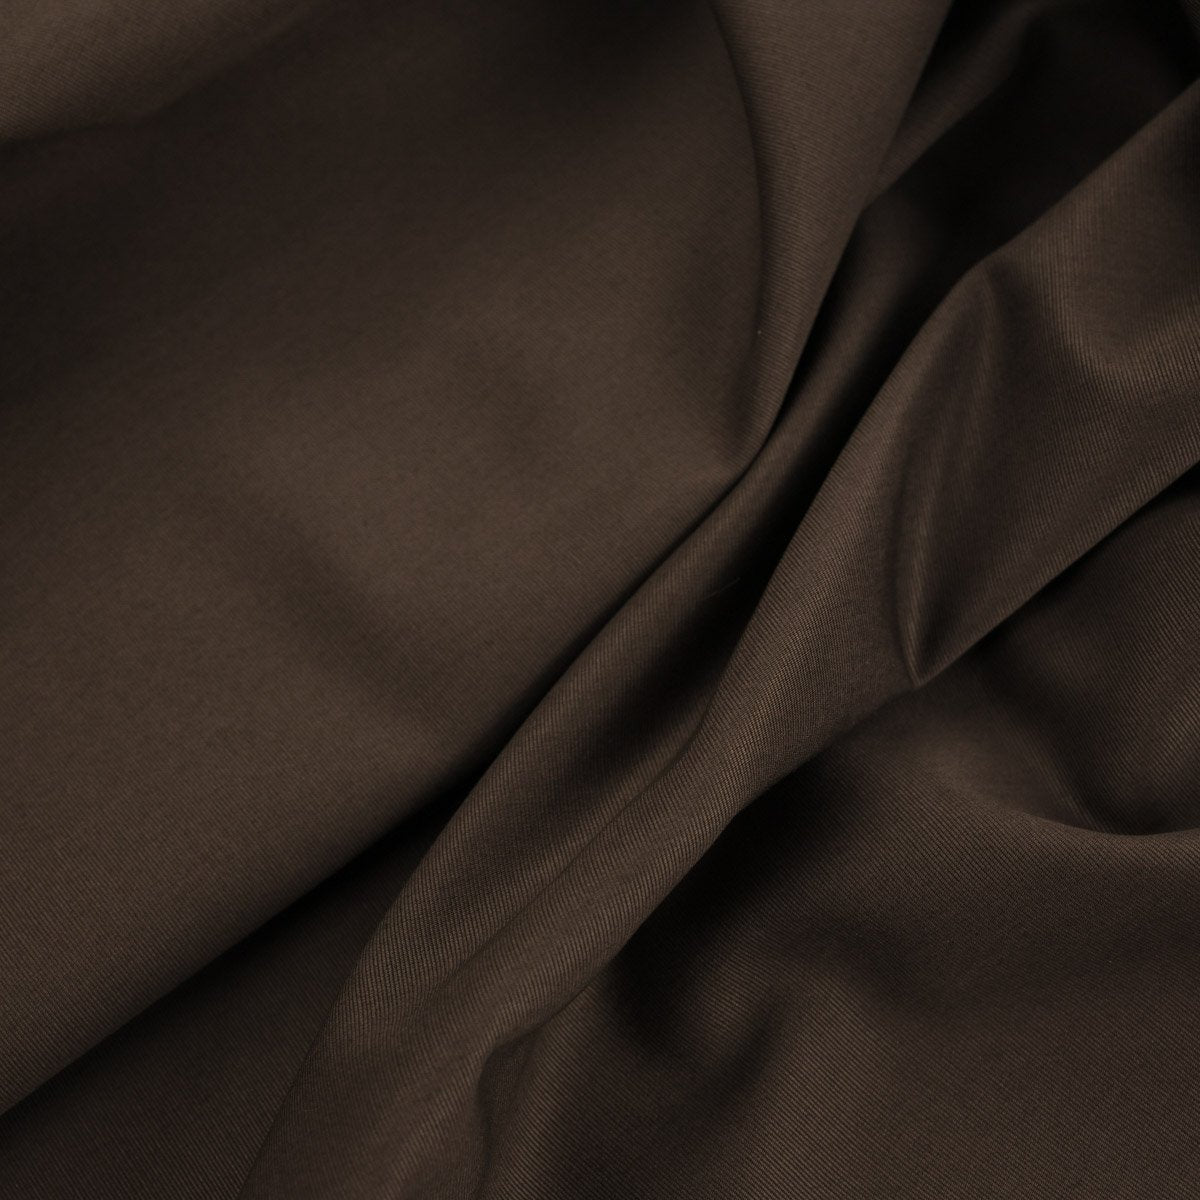 Brown Grosgrain Fabric 96022